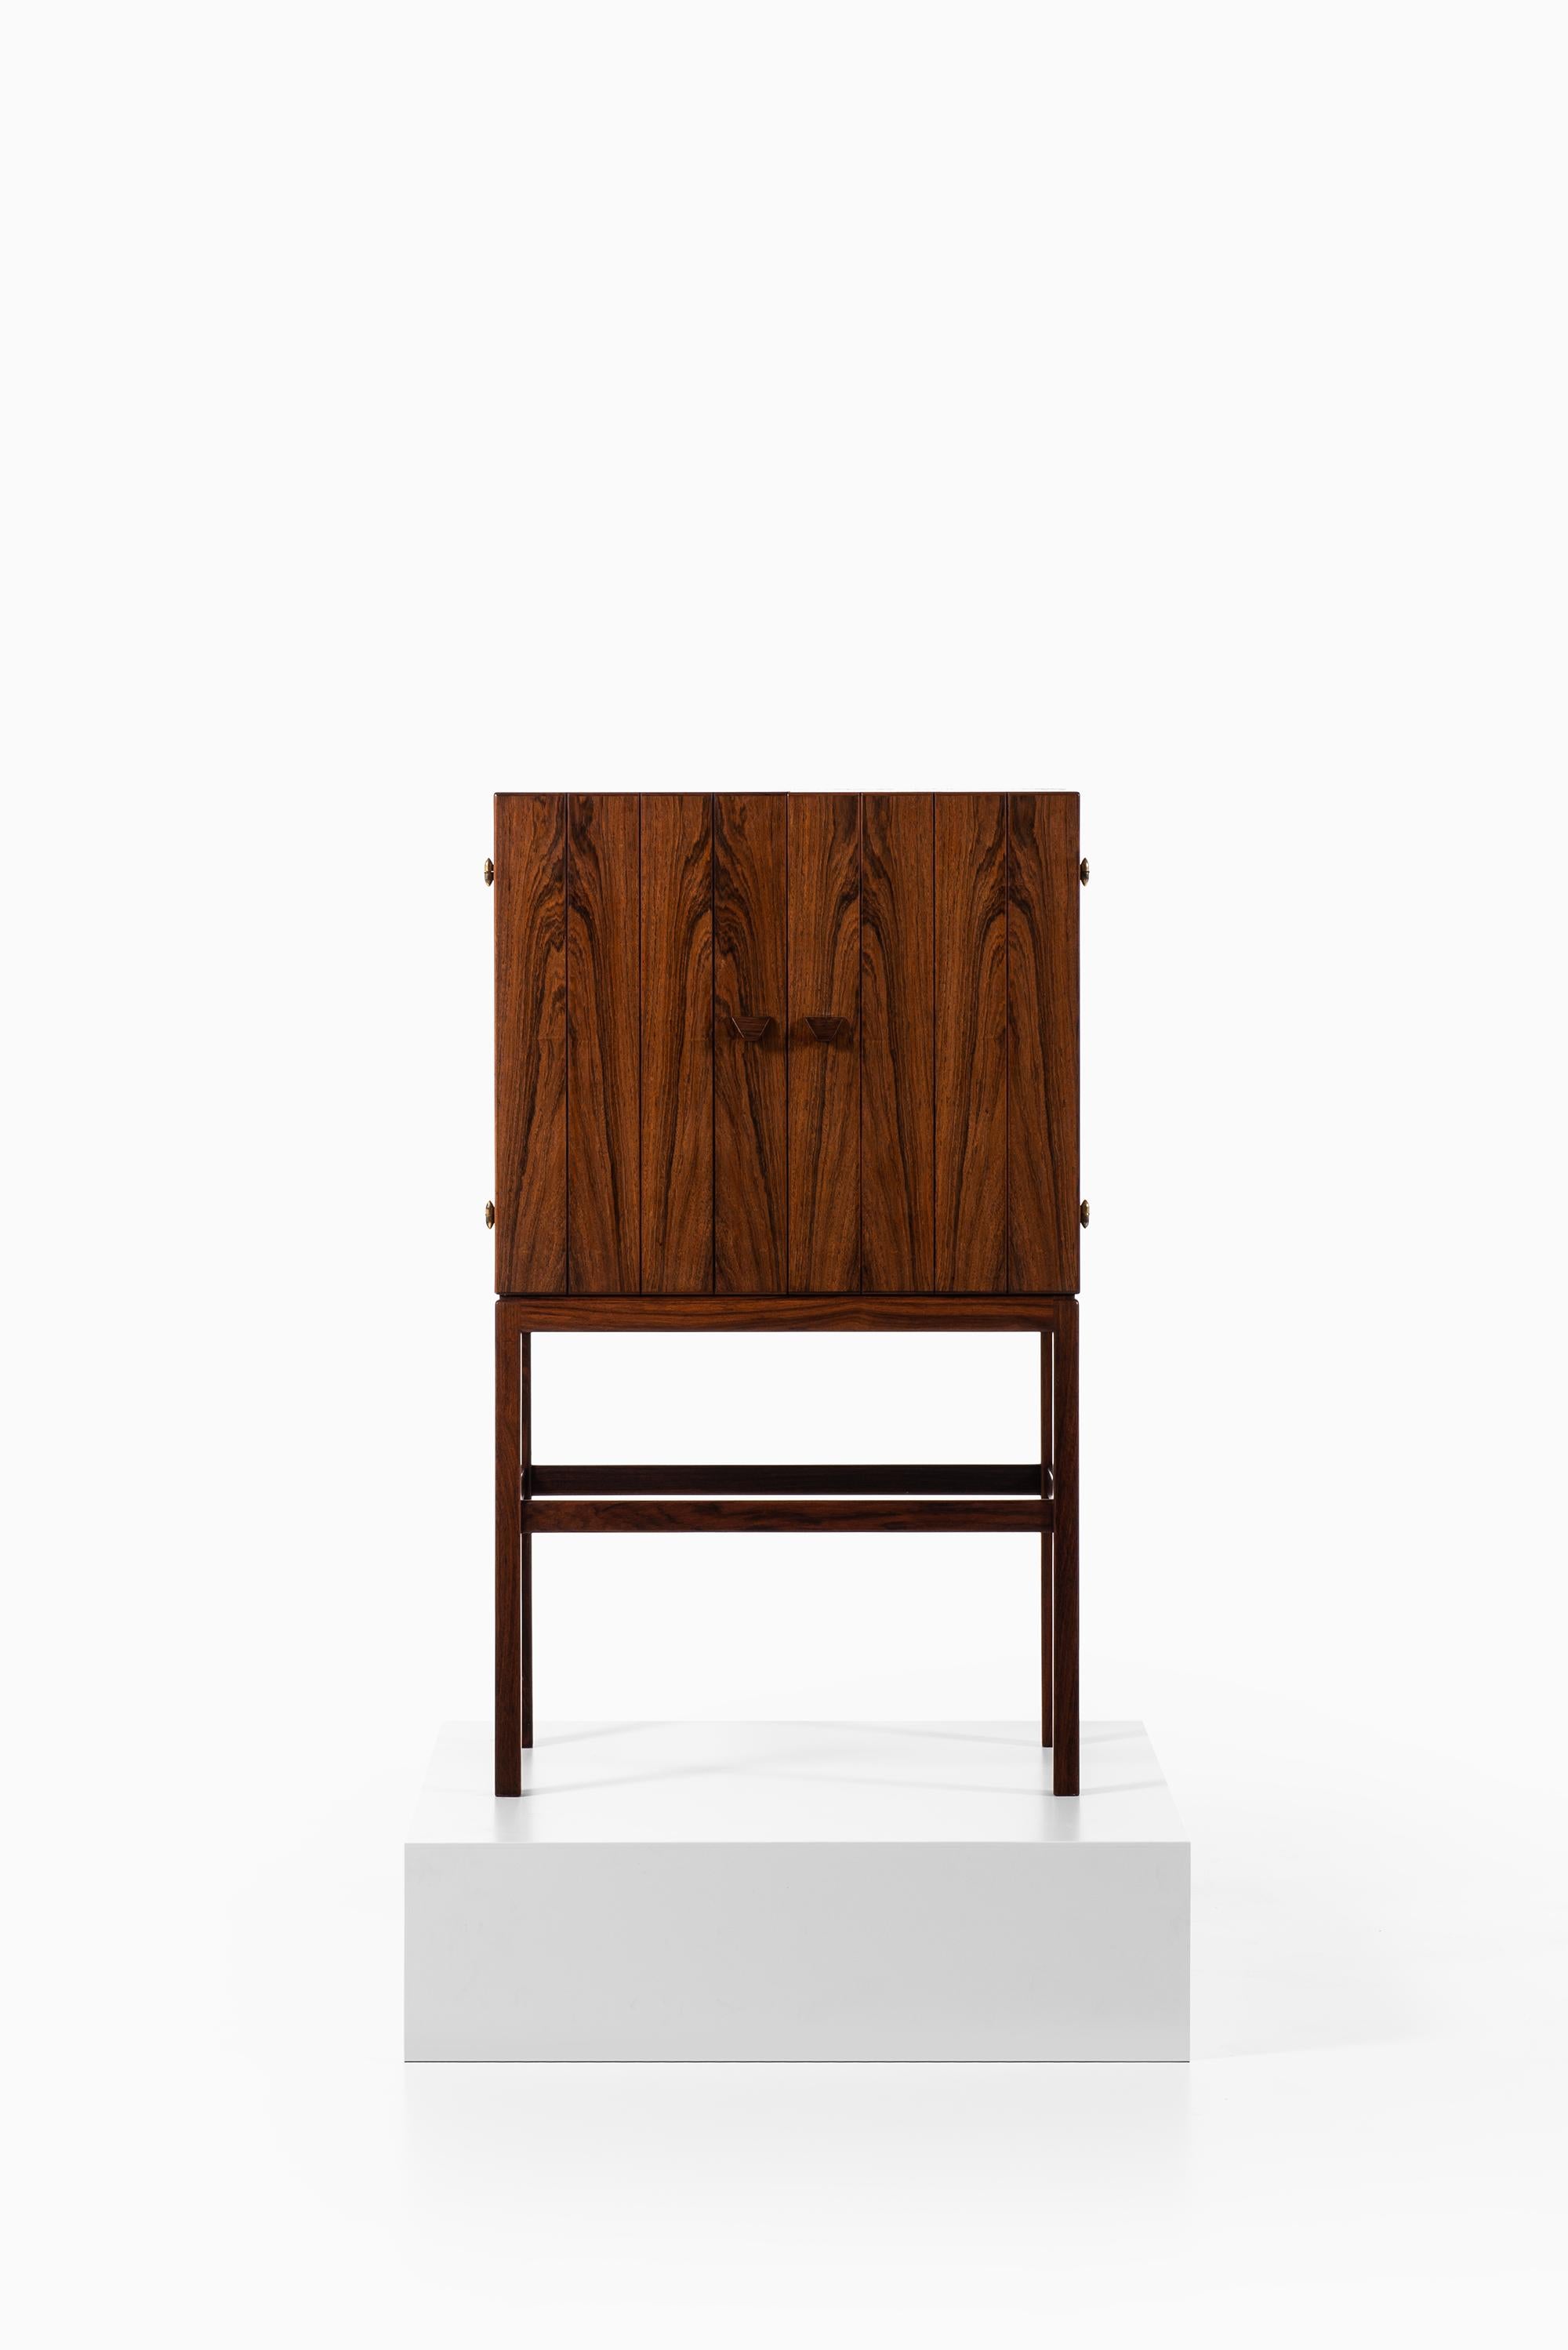 Très rare meuble de bar conçu par Kurt Østervig. Produite par K.P Møbler au Danemark.